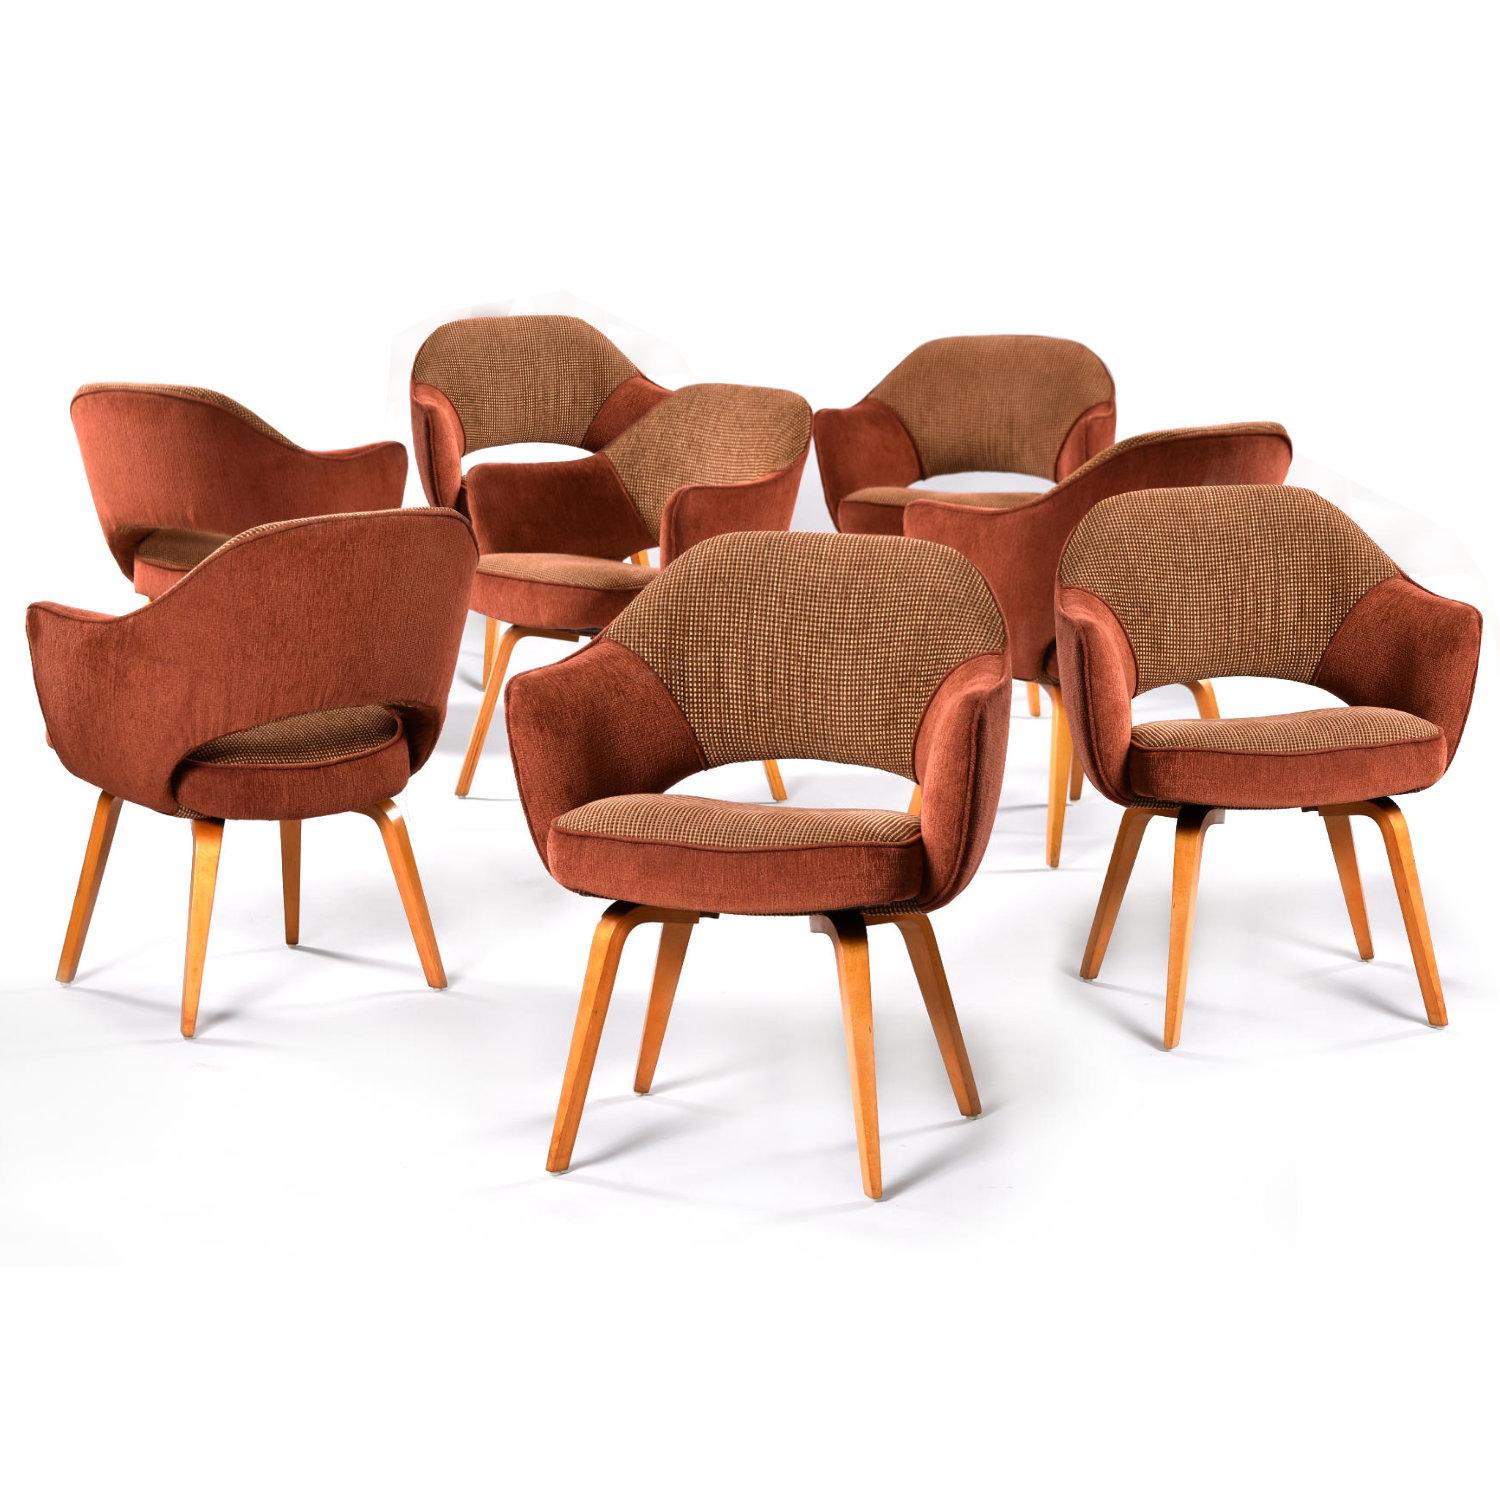 Ensemble de huit fauteuils de direction Saarinen pour Knoll. Ces chaises sont disponibles dans une grande variété d'itérations, mais je pense que nous avons ici une combinaison gagnante. Notre groupe de chaises Saarinen est doté d'accoudoirs et